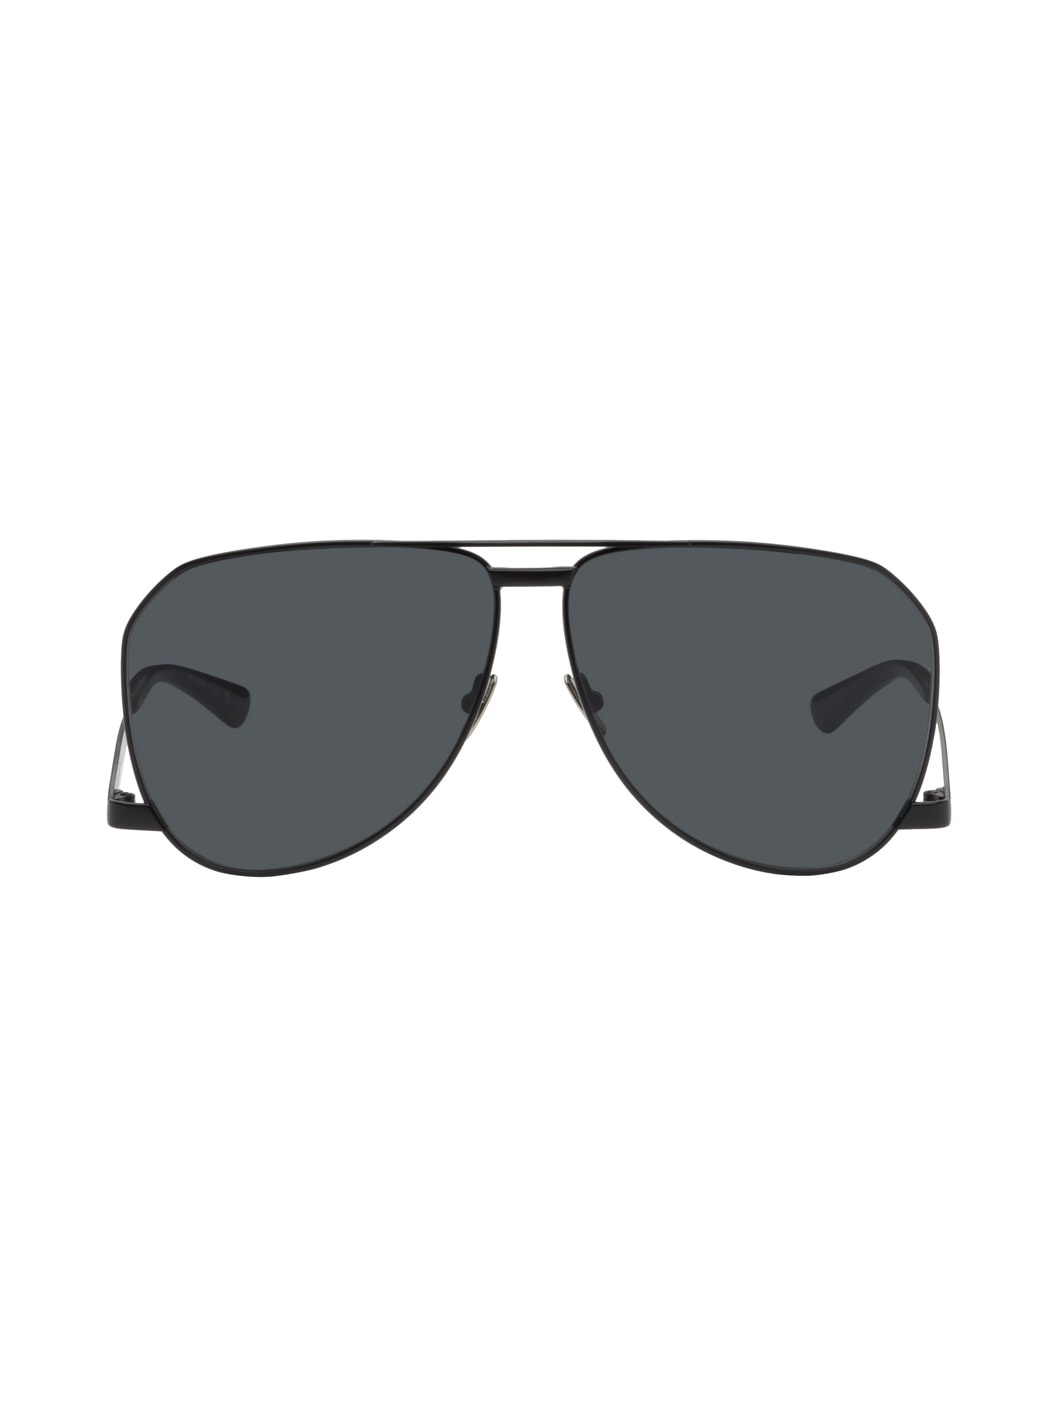 Black SL 690 Dust Sunglasses - 1